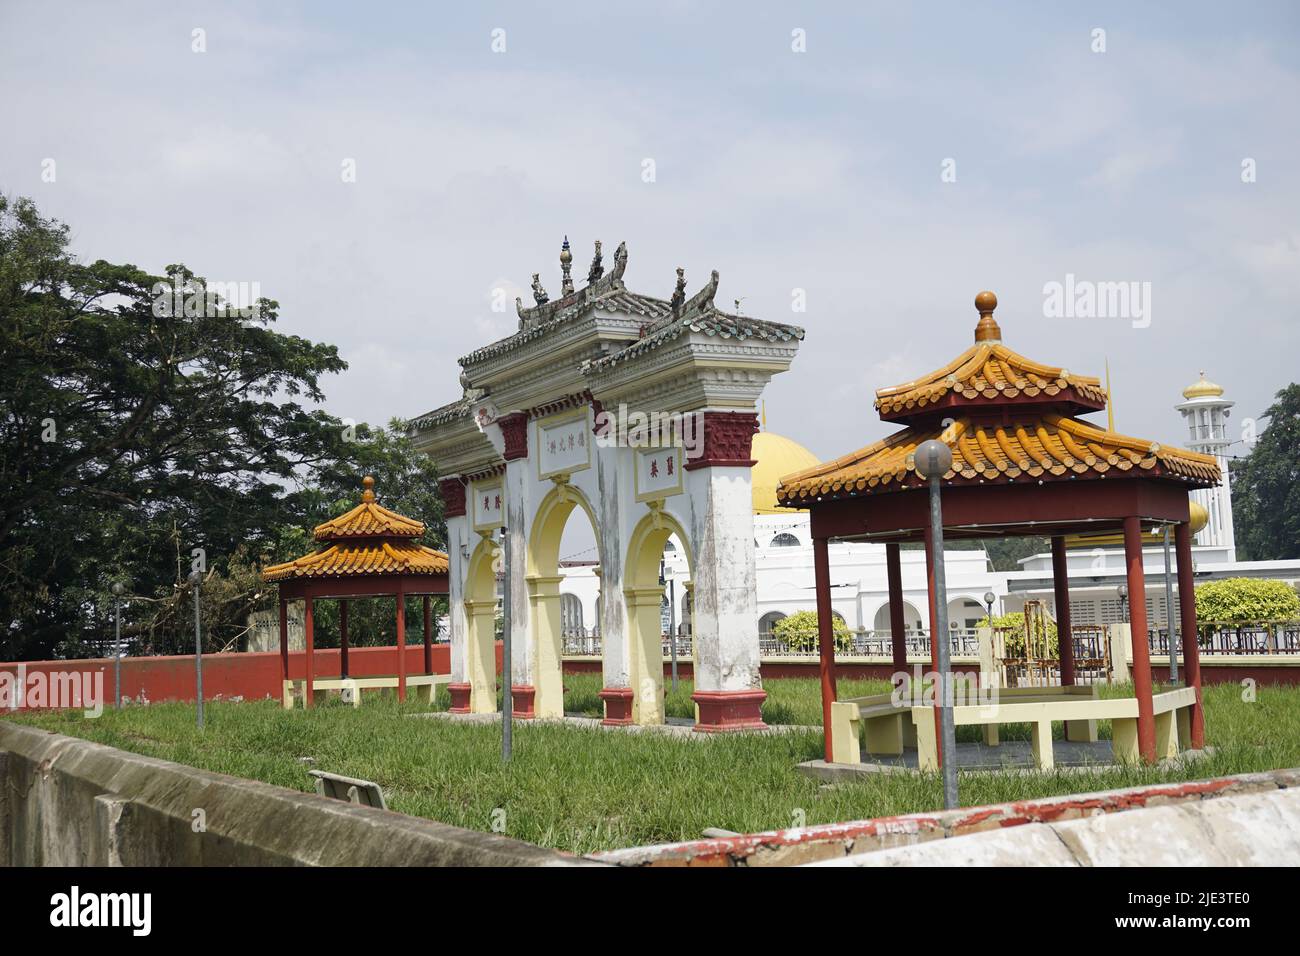 Chinese gateway arch and mosque, Kuala Pilah, Malaysia Stock Photo